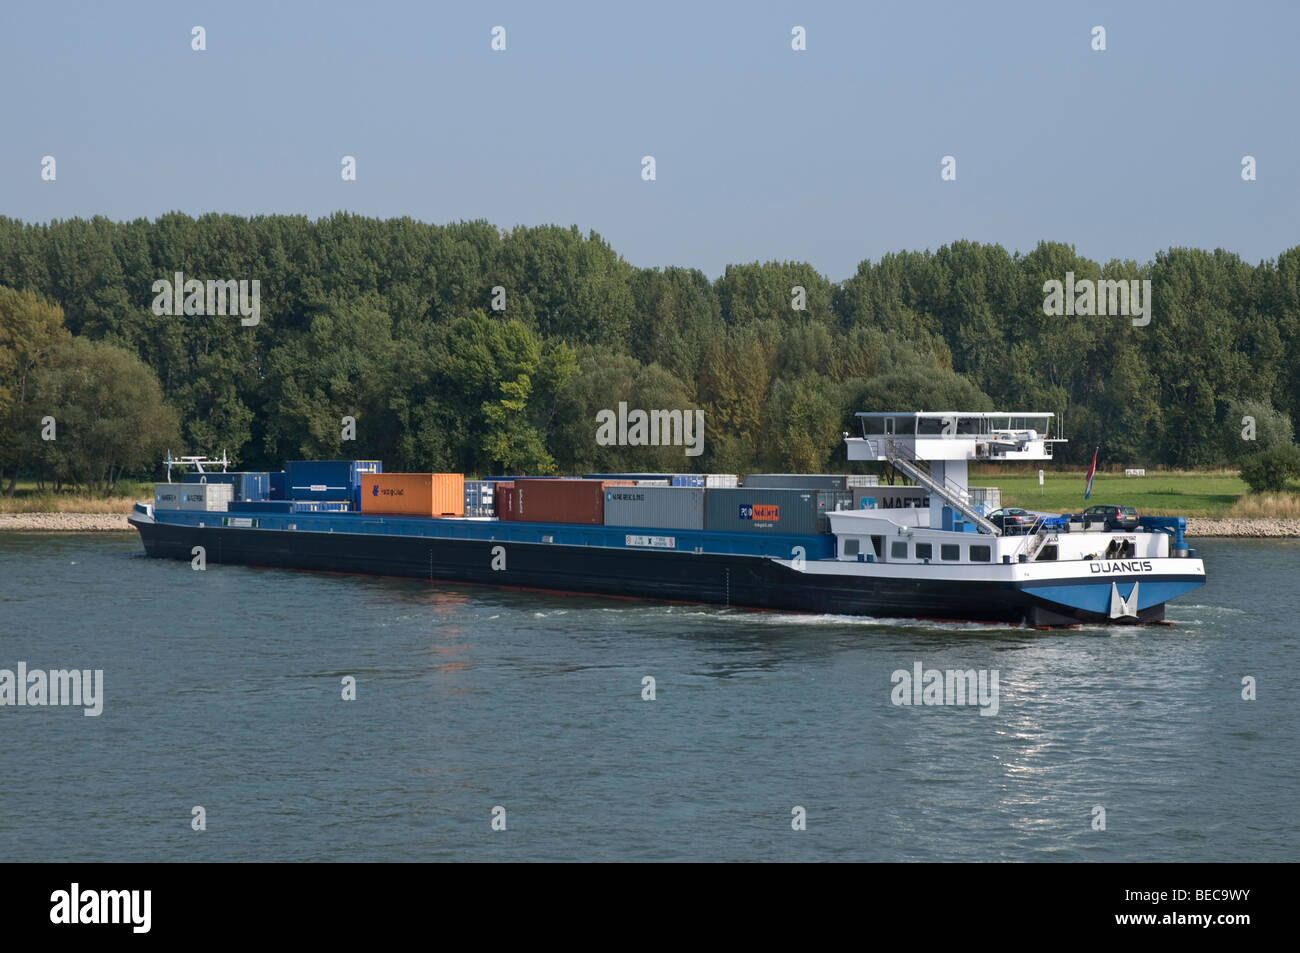 Kahn, Containerschiff Duancis auf dem Rhein bei Bonn bei einem Wendemanöver, North Rhine-Westphalia, Germany, Europe Stockfoto